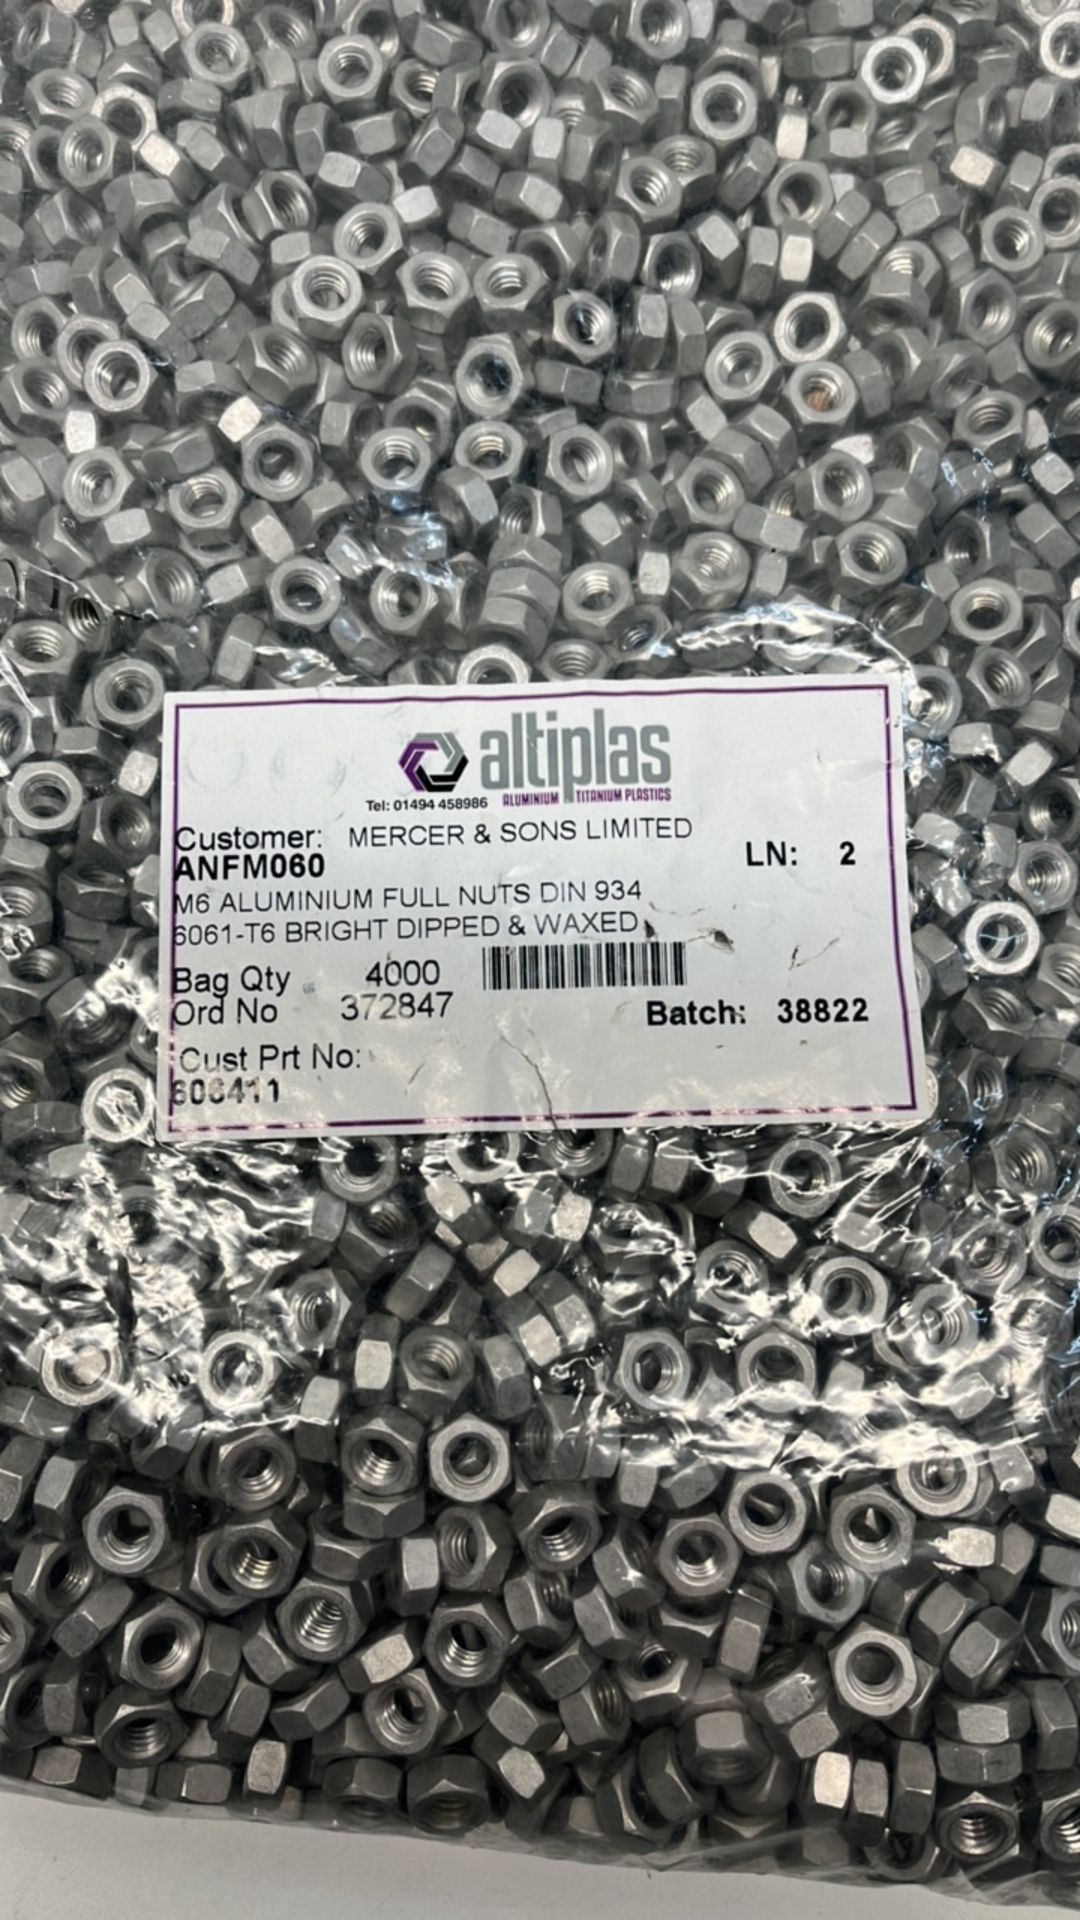 Large Quantity Of Altplas M6 Aluminium Full Nuts - Image 2 of 2